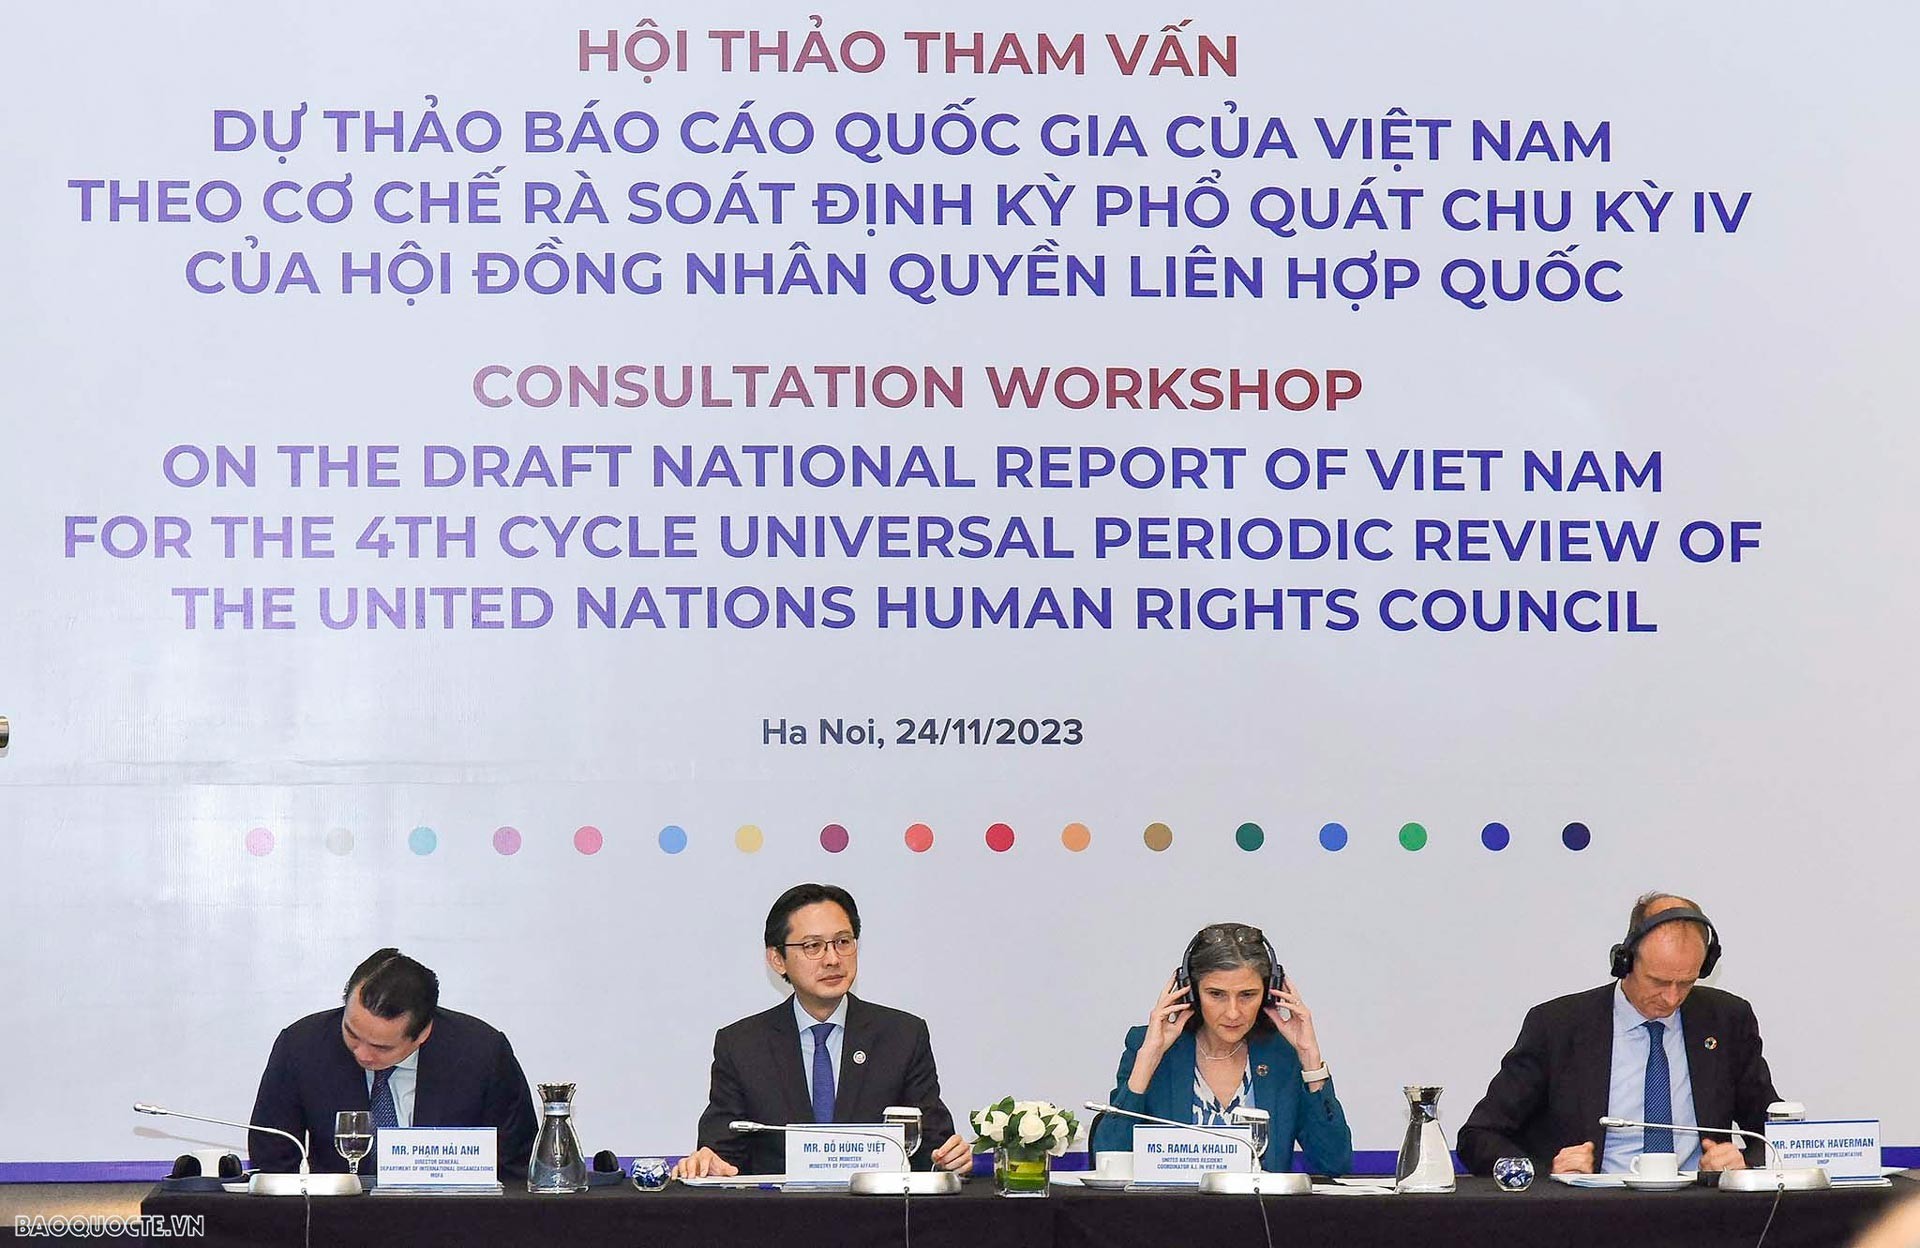 Thứ trưởng Bộ Ngoại giao Đỗ Hùng Việt chủ trì Hội thảo quốc tế tham vấn dự thảo Báo cáo quốc gia theo cơ chế UPR chu kỳ IV của Hội đồng Nhân quyền Liên hợp quốc do Bộ Ngoại giao và Chương trình phát triển Liên hợp quốc (UNDP) tổ chức tại Hà Nội, ngày 24/11/2023.